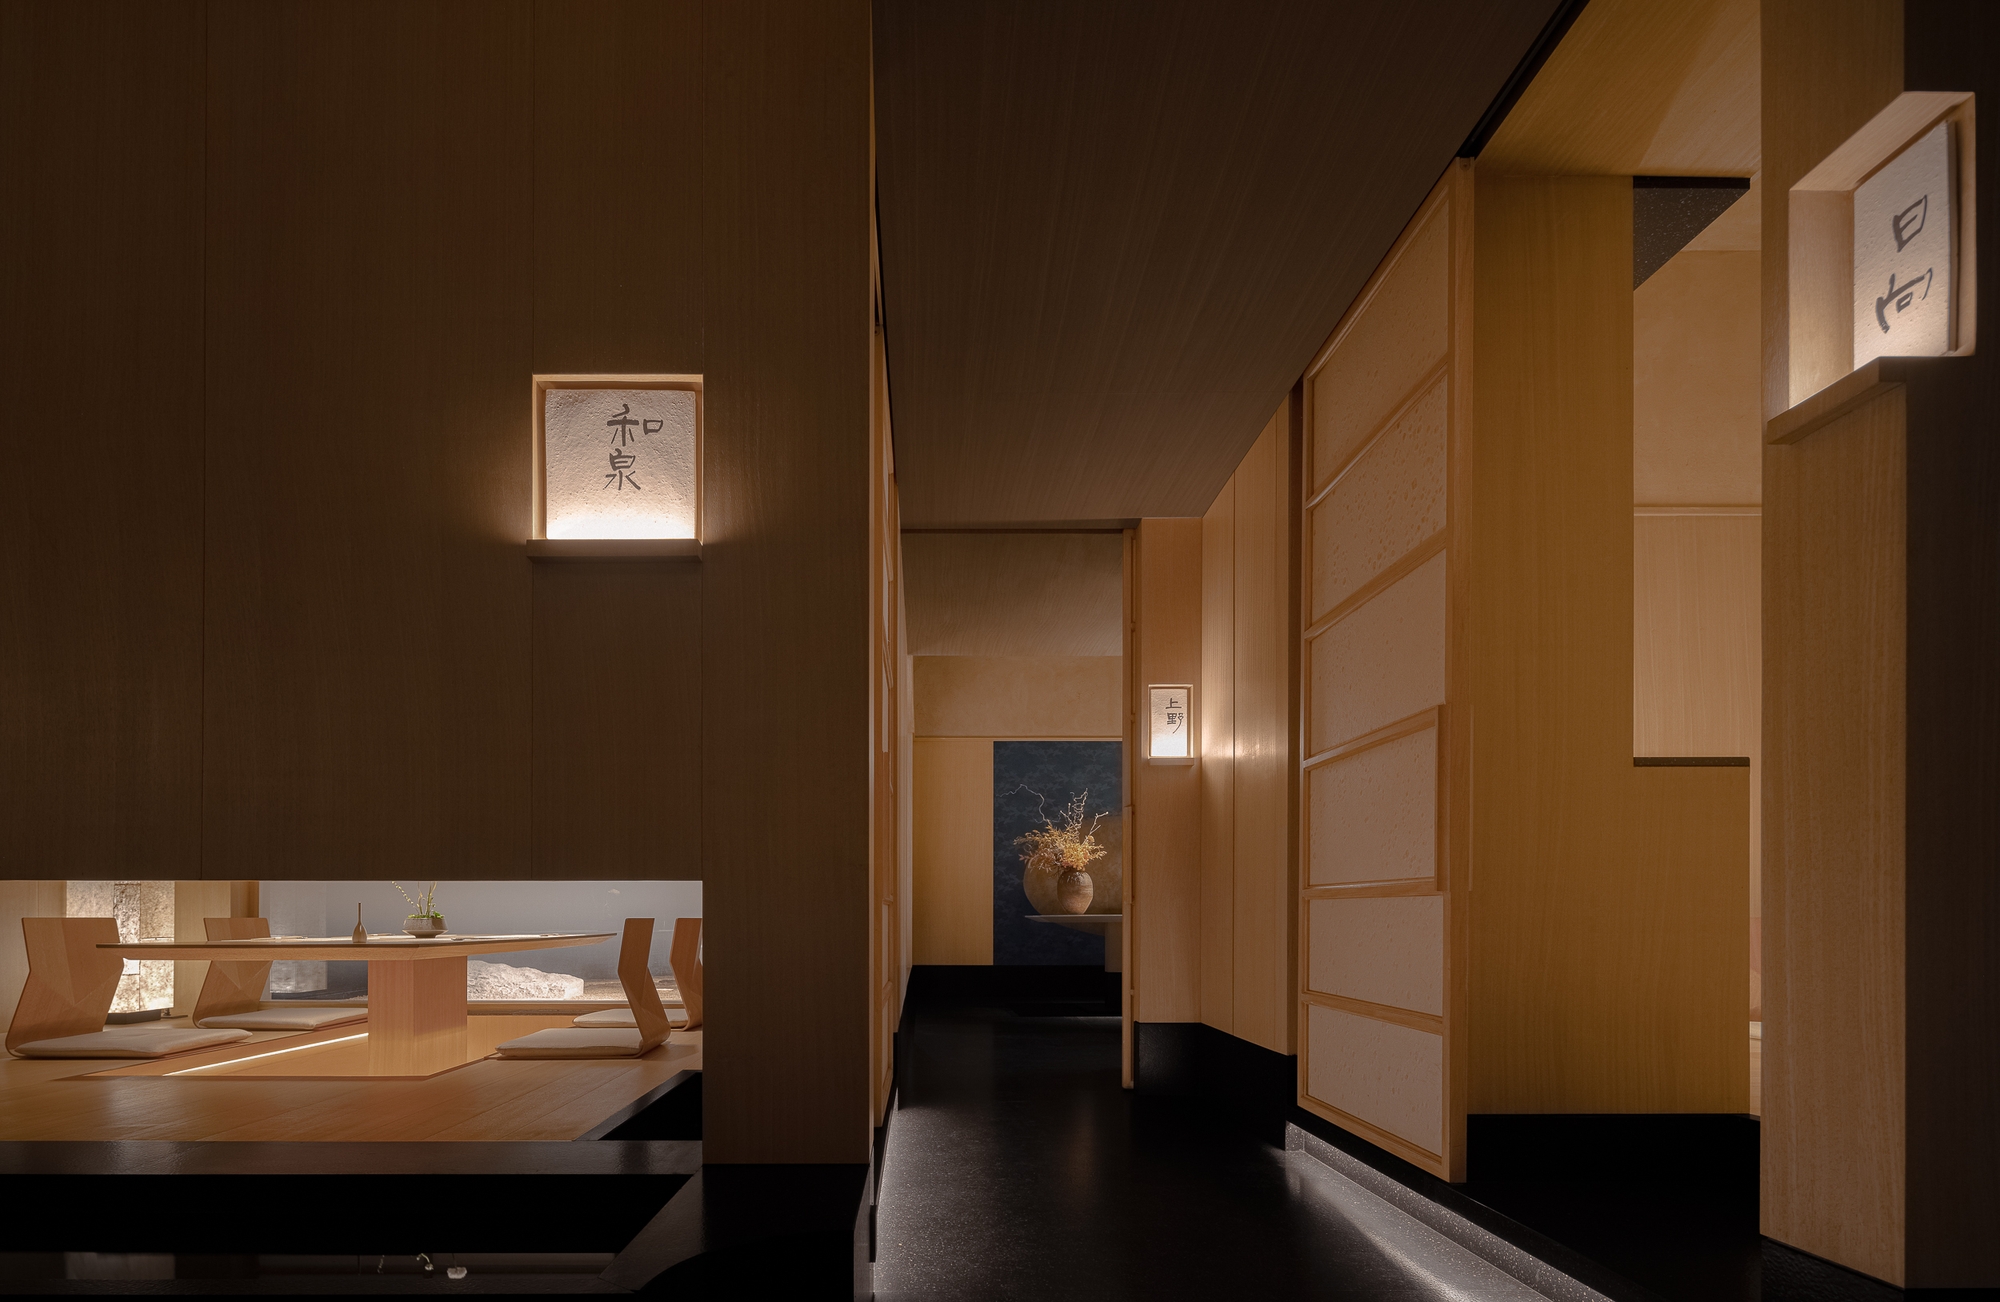 滕餐厅|ART-Arrakis | 建筑室内设计的创新与灵感